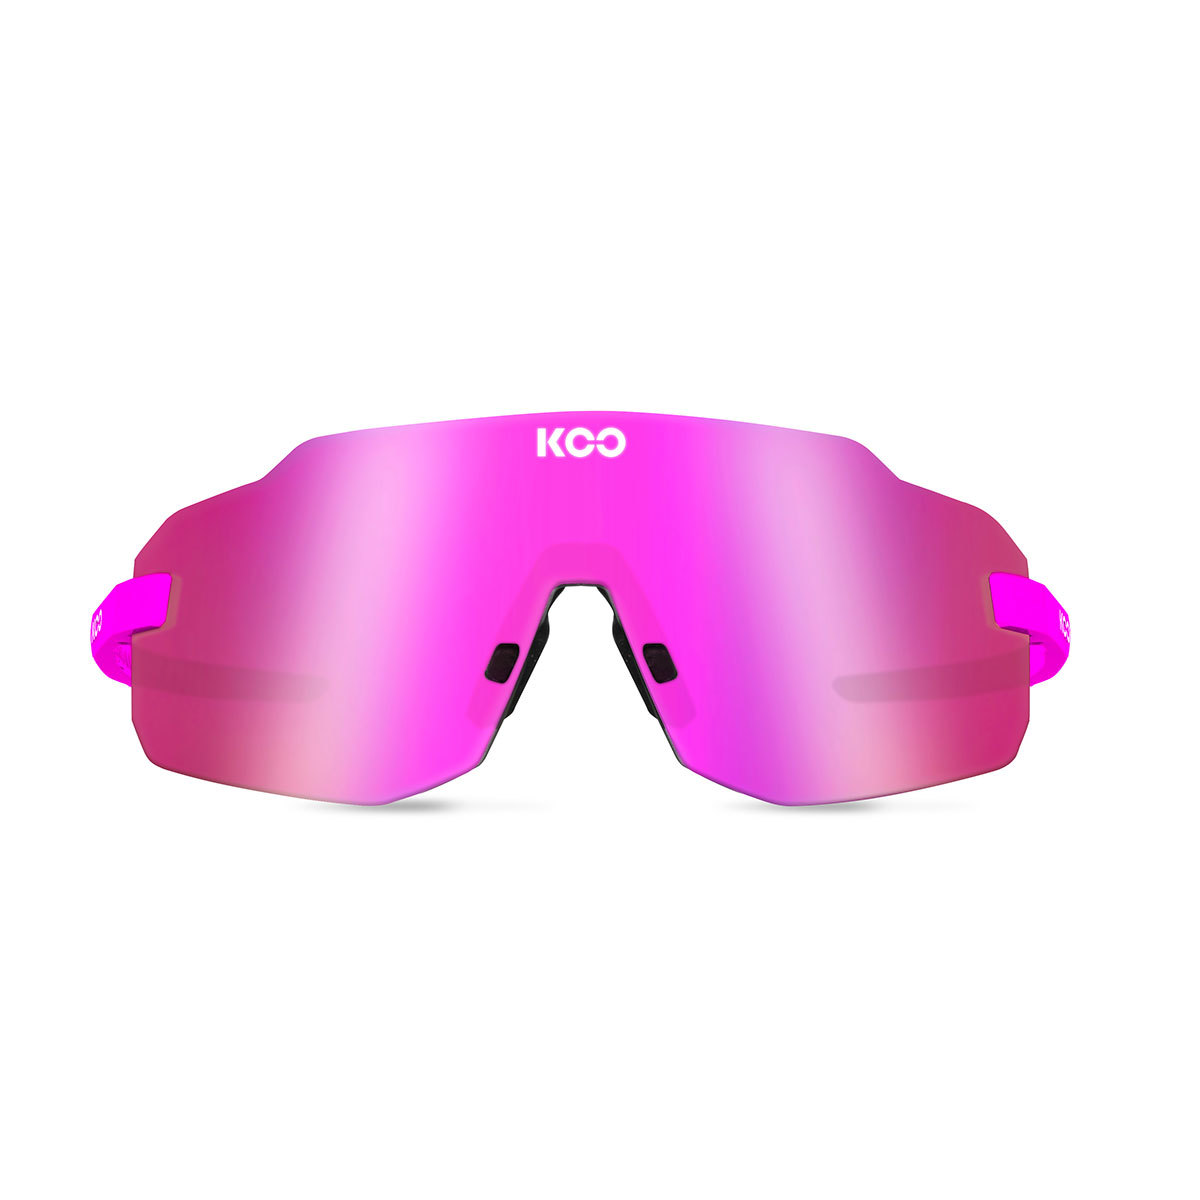 KOO SUPERNOVA Sport Zonnebril Paars met Pink Mirror Lens